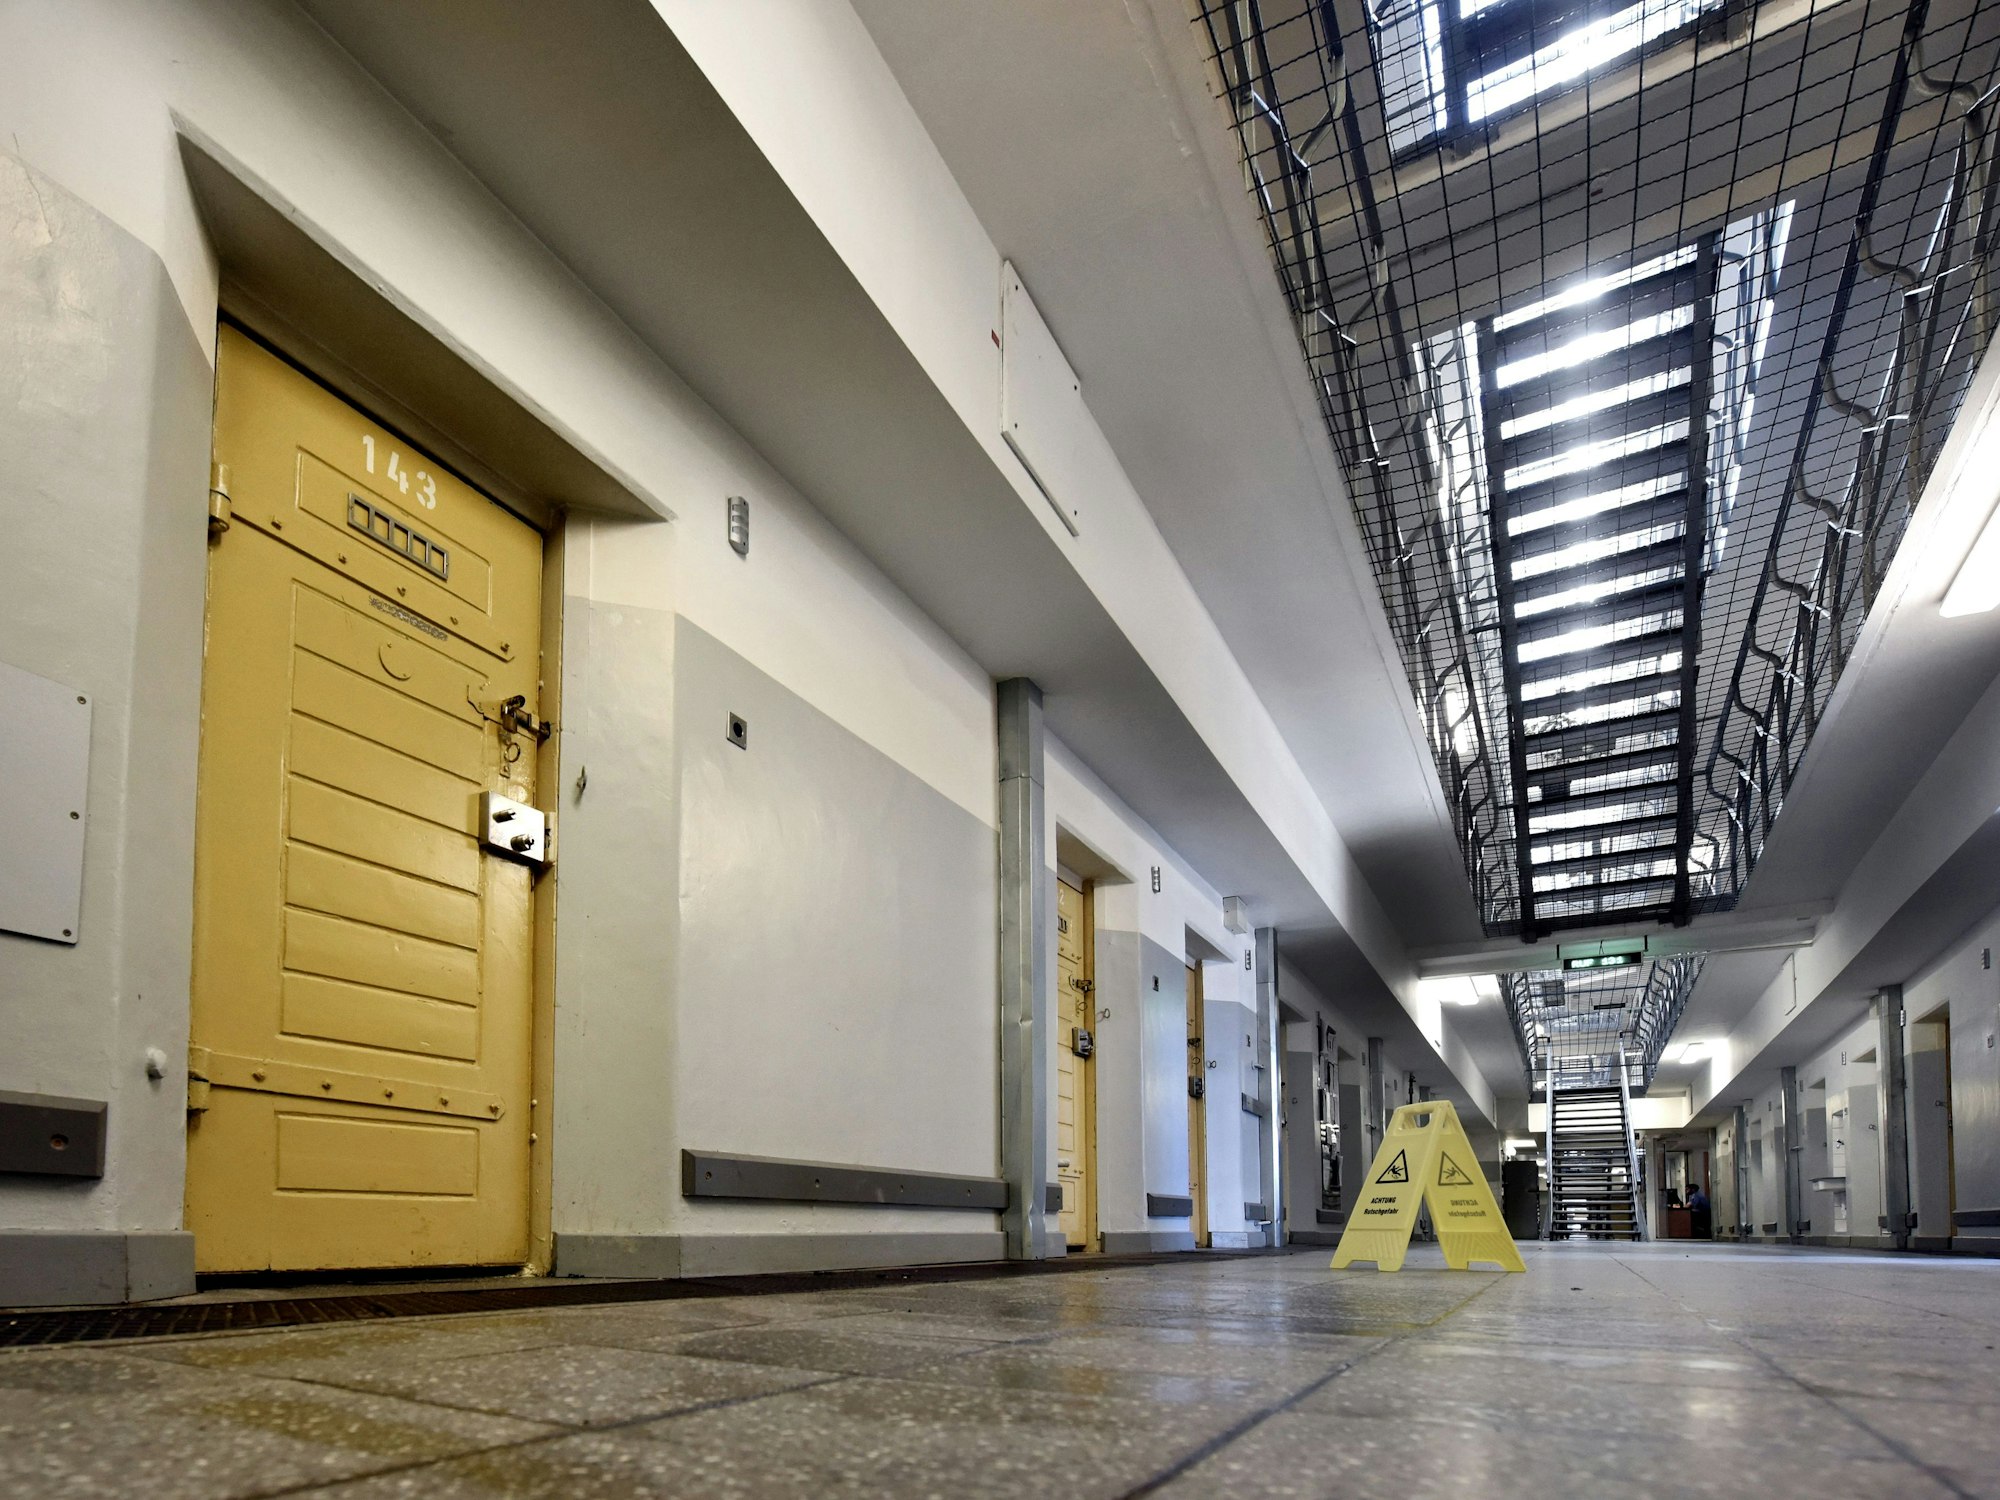 Die Tür zur Zelle 143 in der Klever Justizvollzugsanstalt in NRW. Foto vom 18. September 2018.